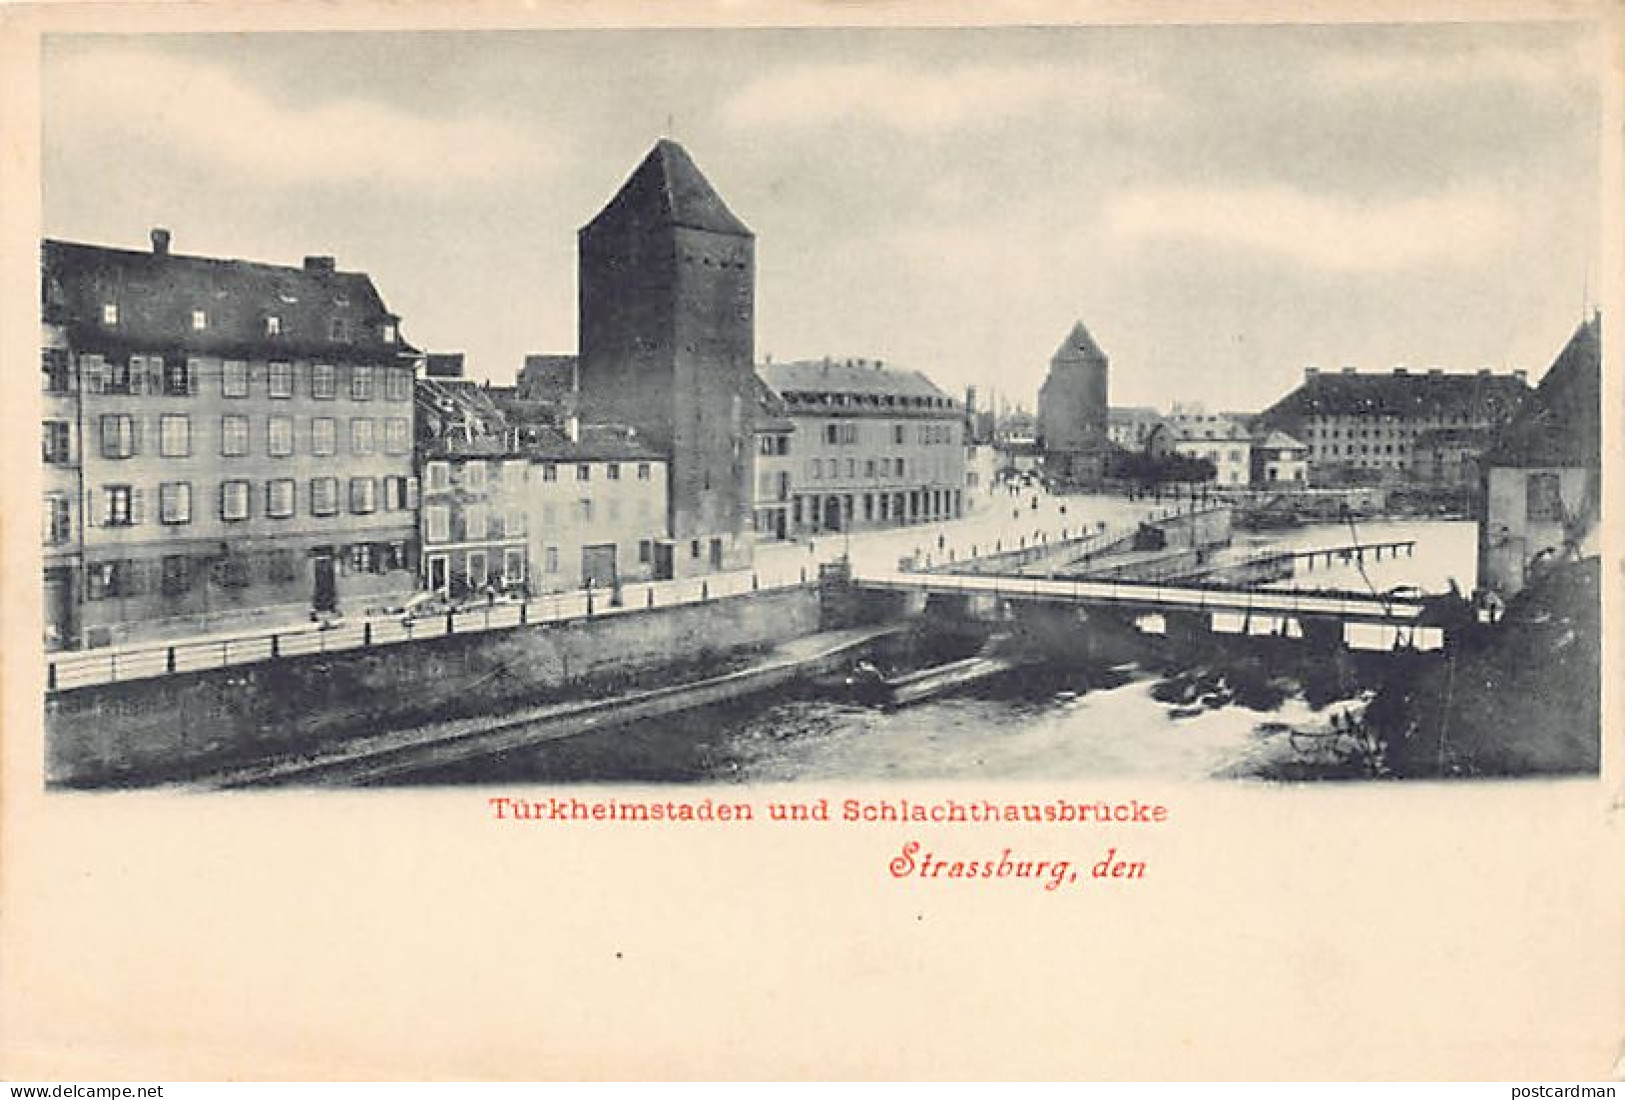 STRASBOURG - Quai De Türkheim - Pont De L'Abattoir - Türkheimstaden Und Schlachthausbrücke - Strasbourg